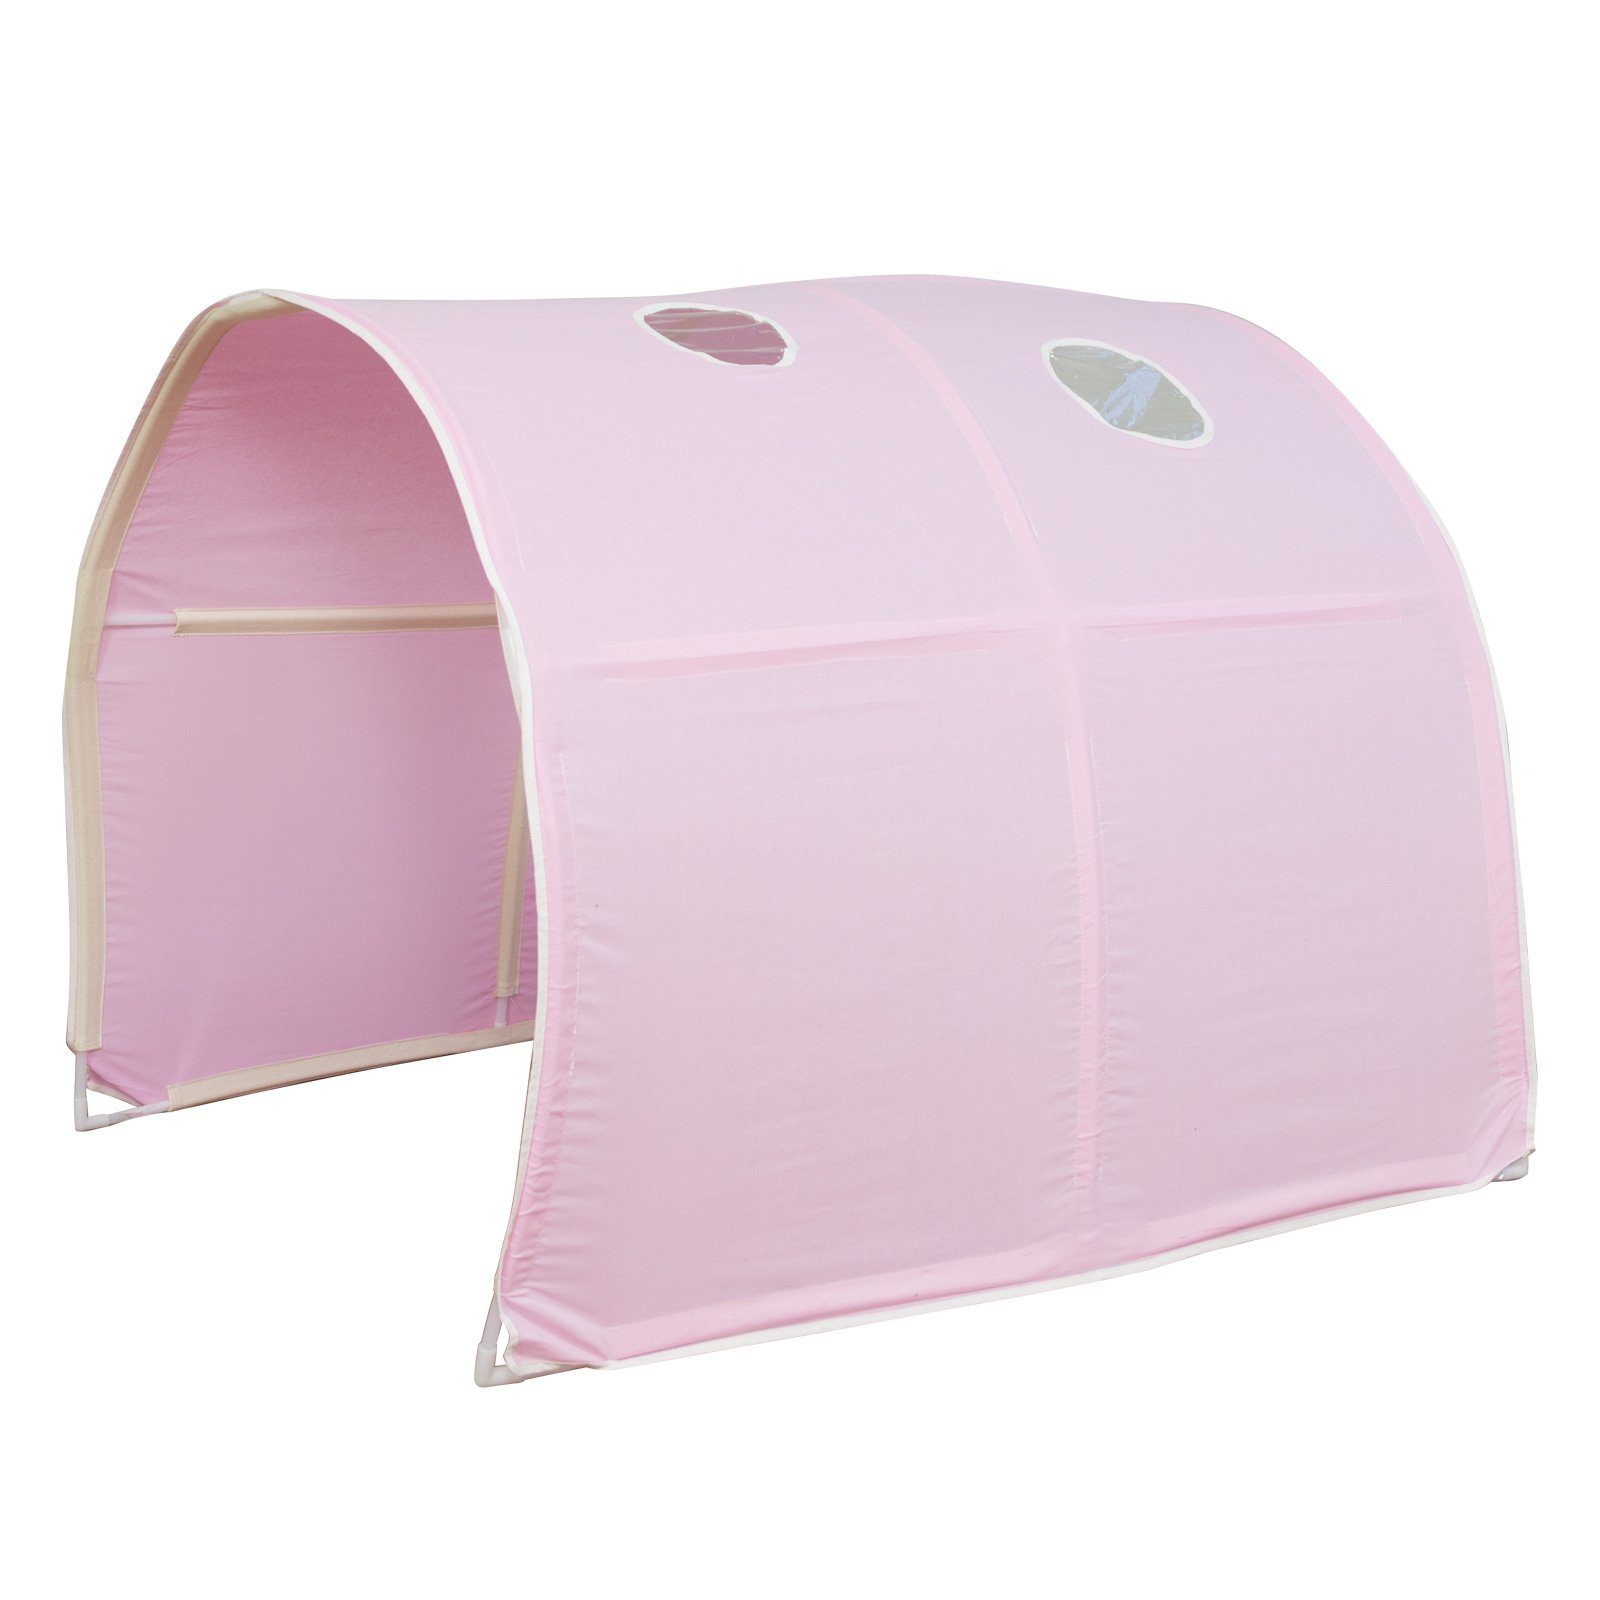 Homestyle4u Betttunnel für Hochbett Zelt Bettdach Höhle Kinderbett verschiedene Farben